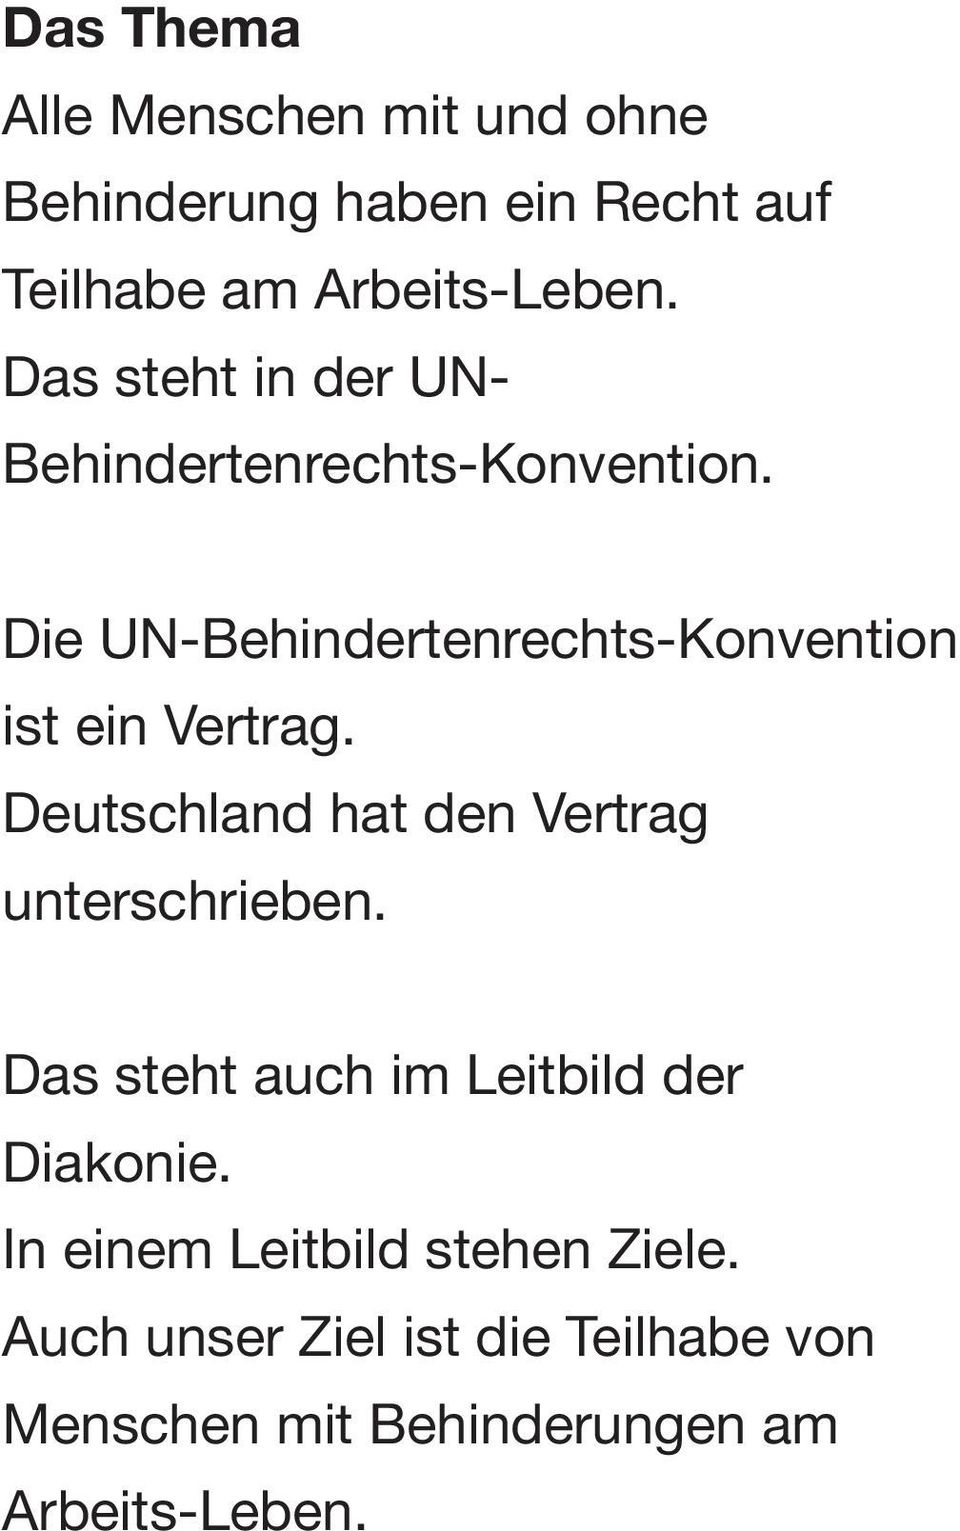 Die UN-Behindertenrechts-Konvention ist ein Vertrag. Deutschland hat den Vertrag unterschrieben.